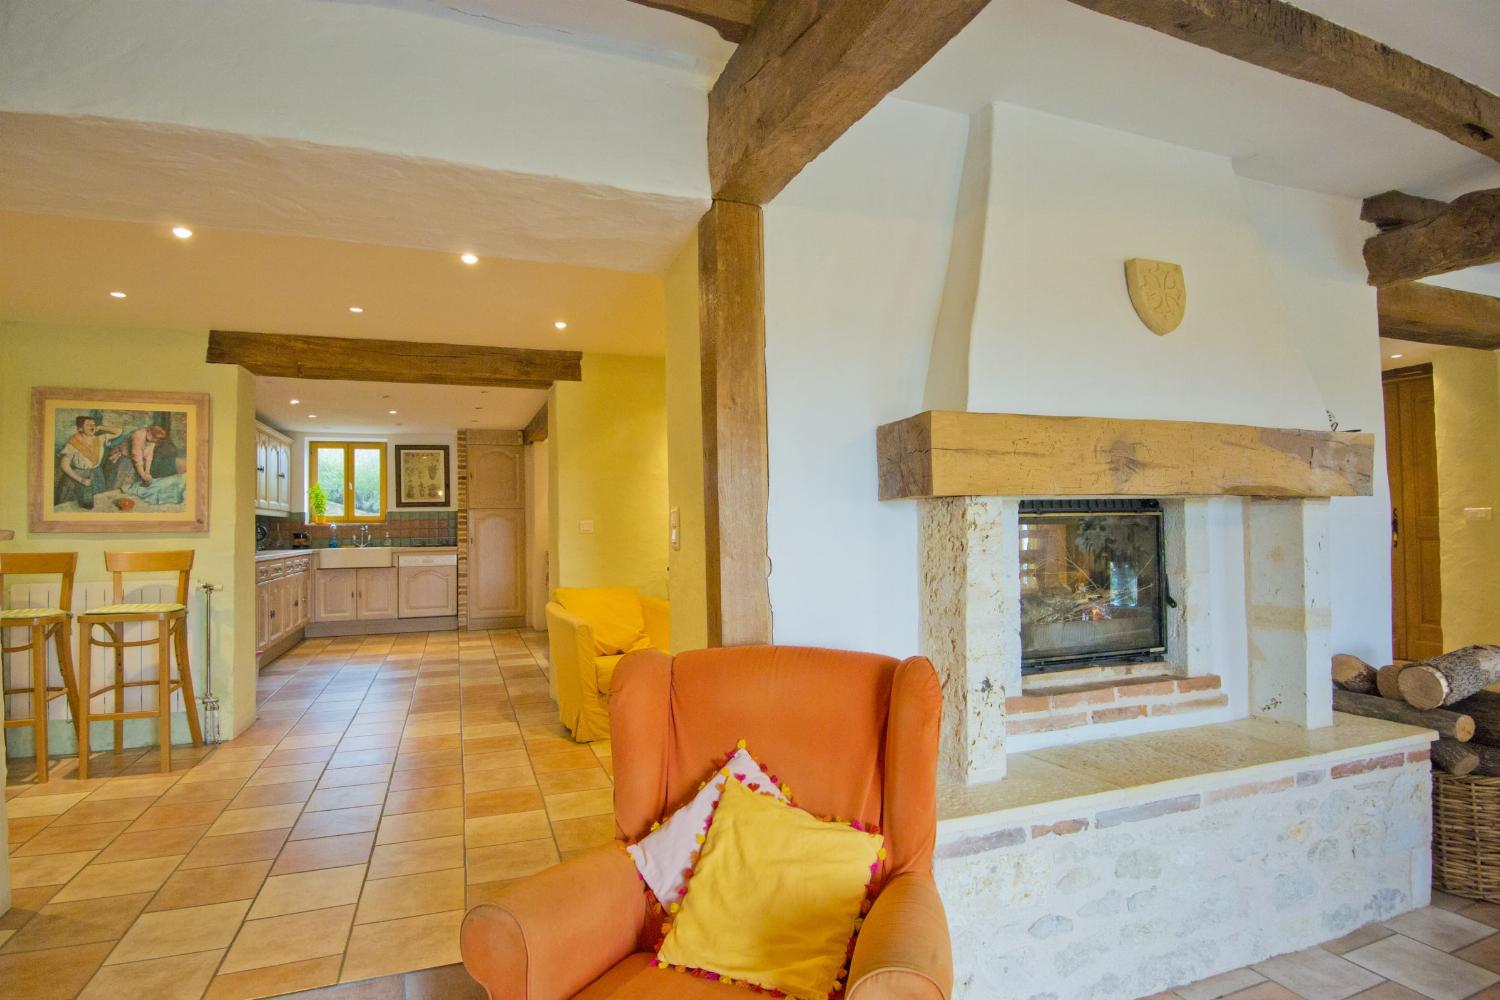 Living room | Rental home in Tarn-en-Garonne